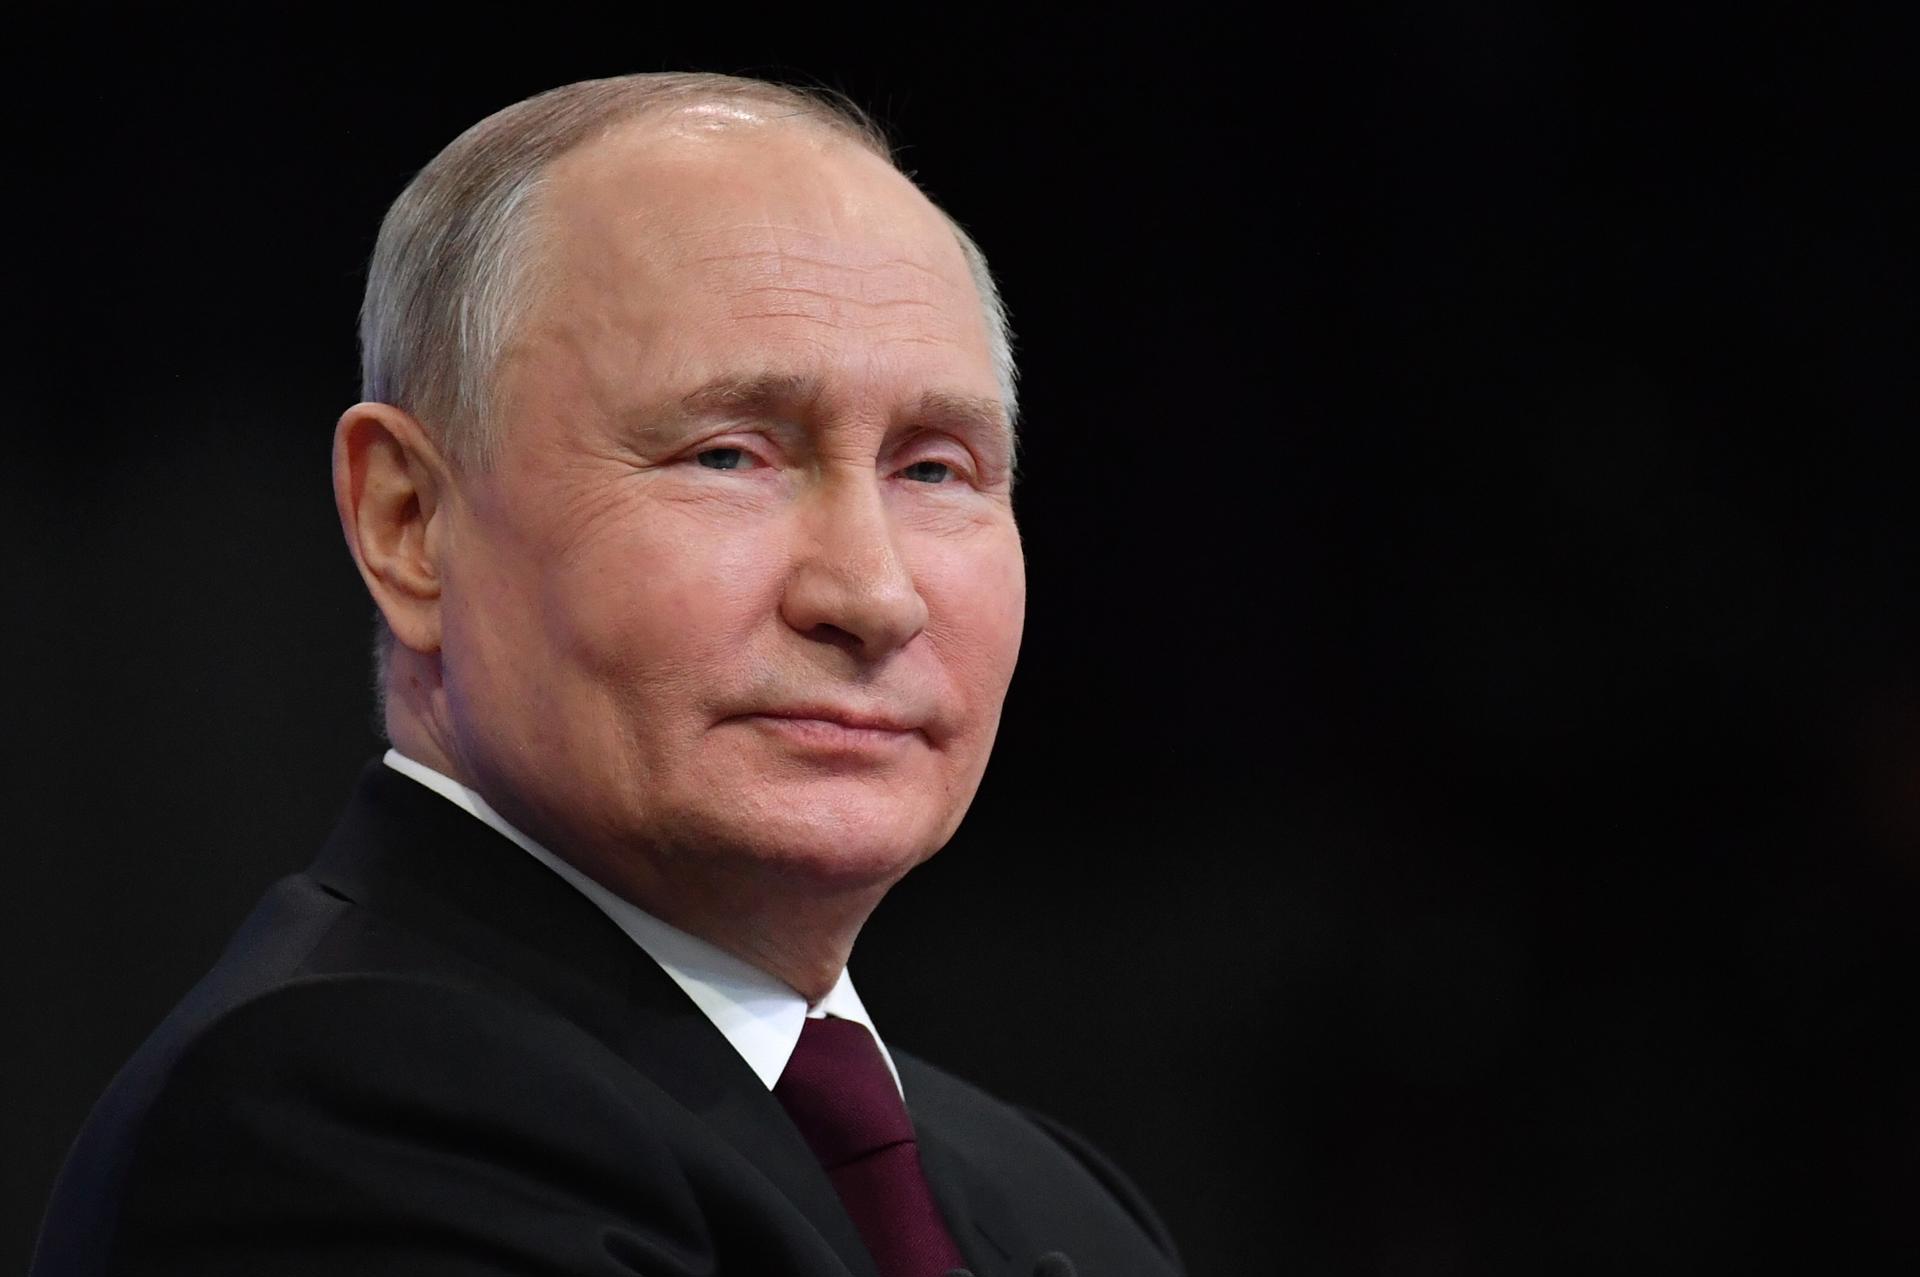 Putin promete hacer de Rusia una “potencia soberana” en su primer discurso de campaña